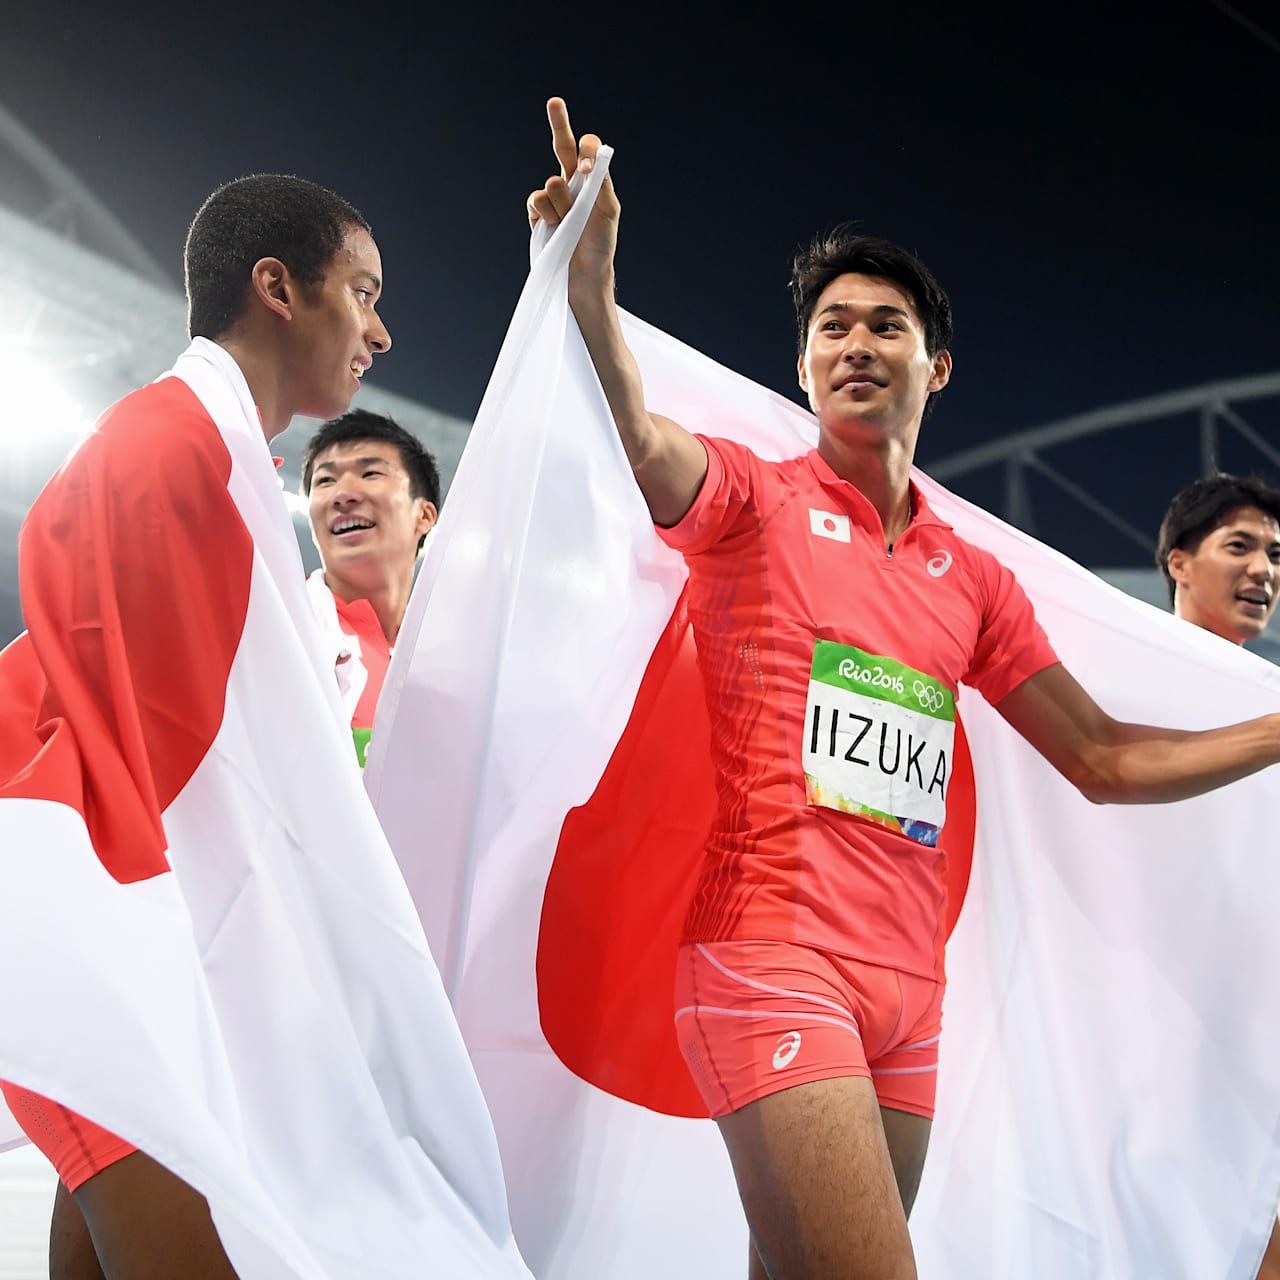 日本リレーチームが世界最高レベルのバトンパスで銀メダル獲得